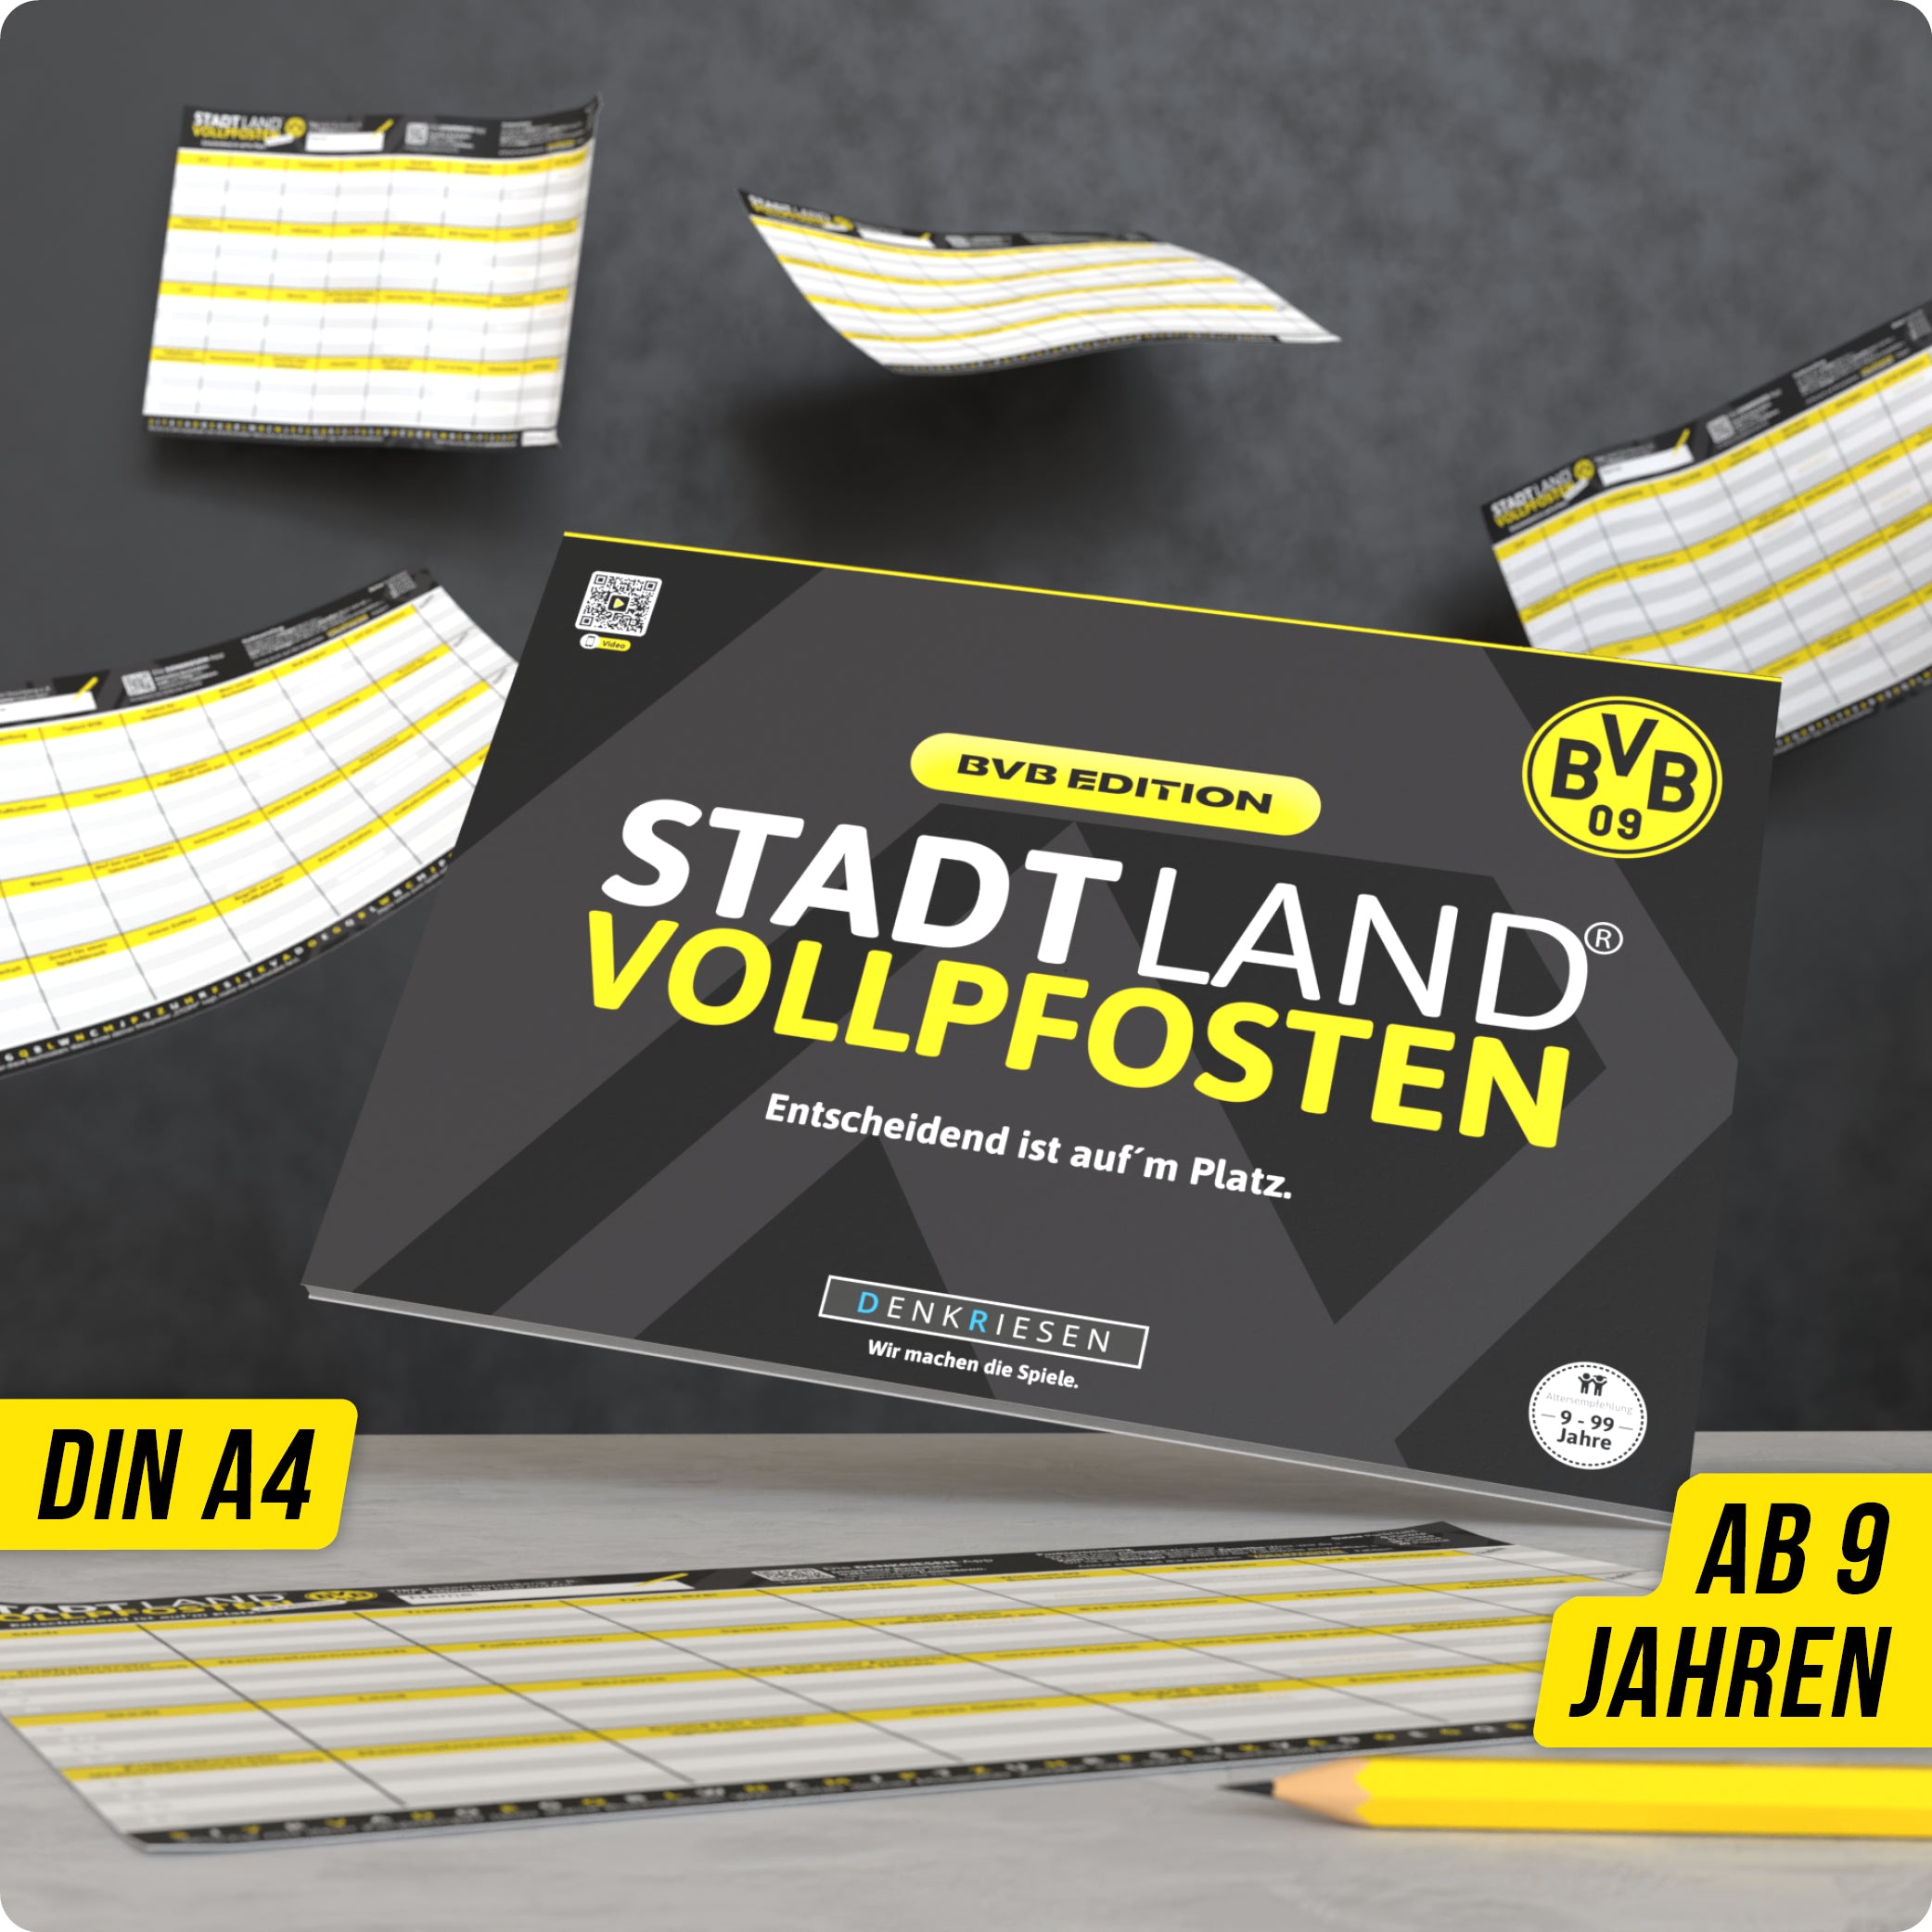 Stadt Land Vollpfosten® BVB Edition – "Entscheidend ist auf'm Platz." | A4 Spielblock